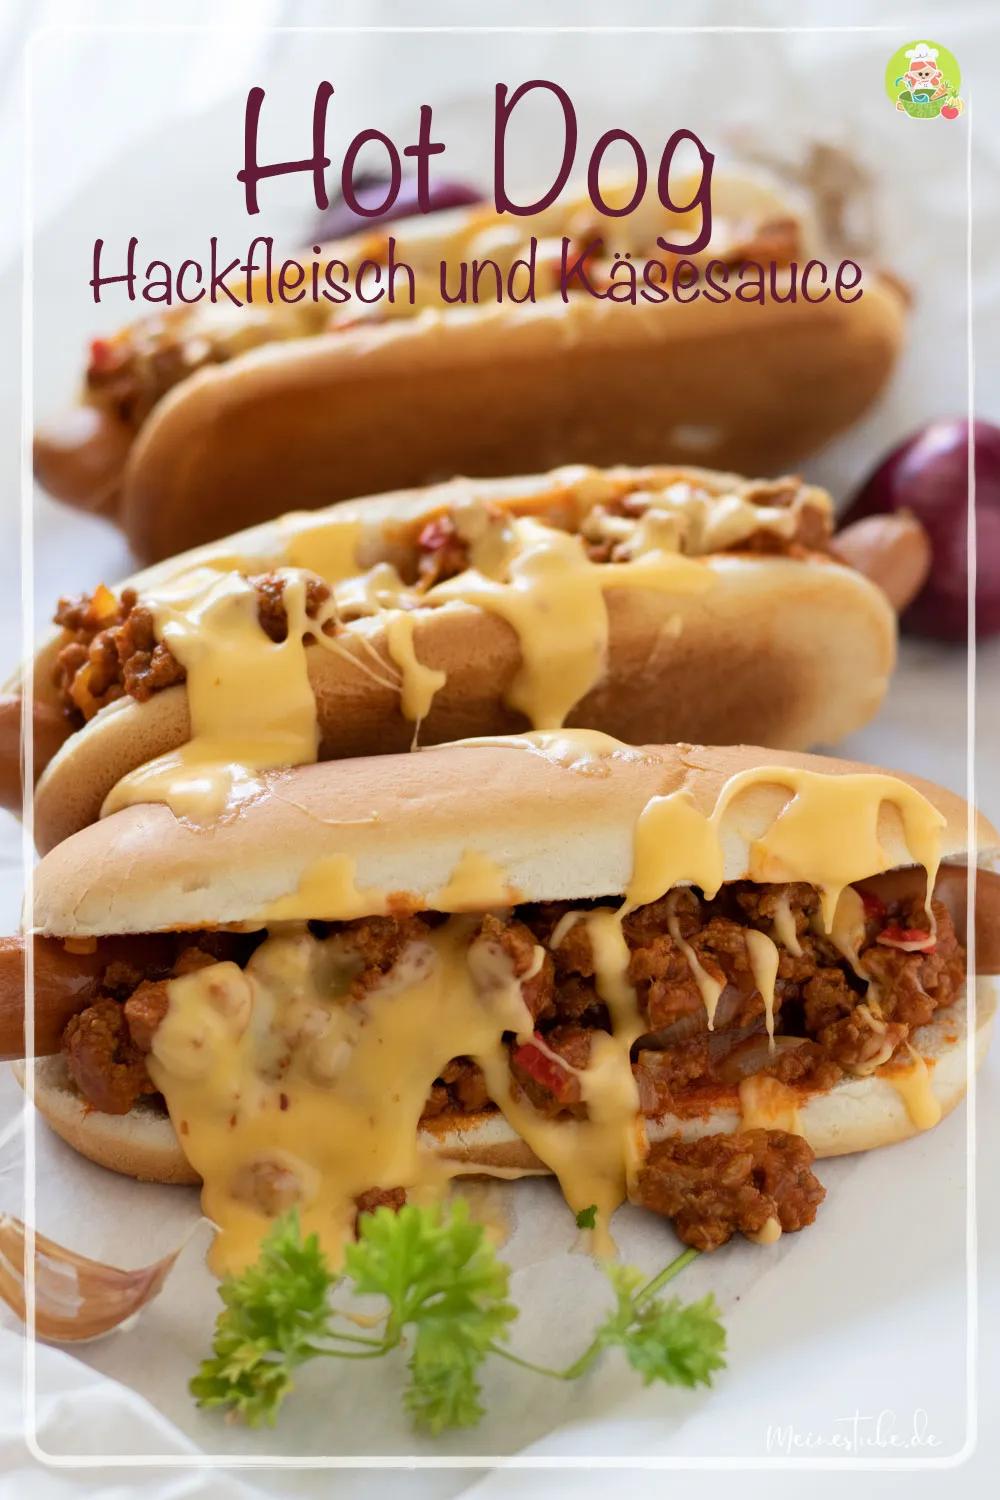 Hot Dog mit Hackfleisch und Käsesauce - MeineStube | Rezept | Hot dog ...